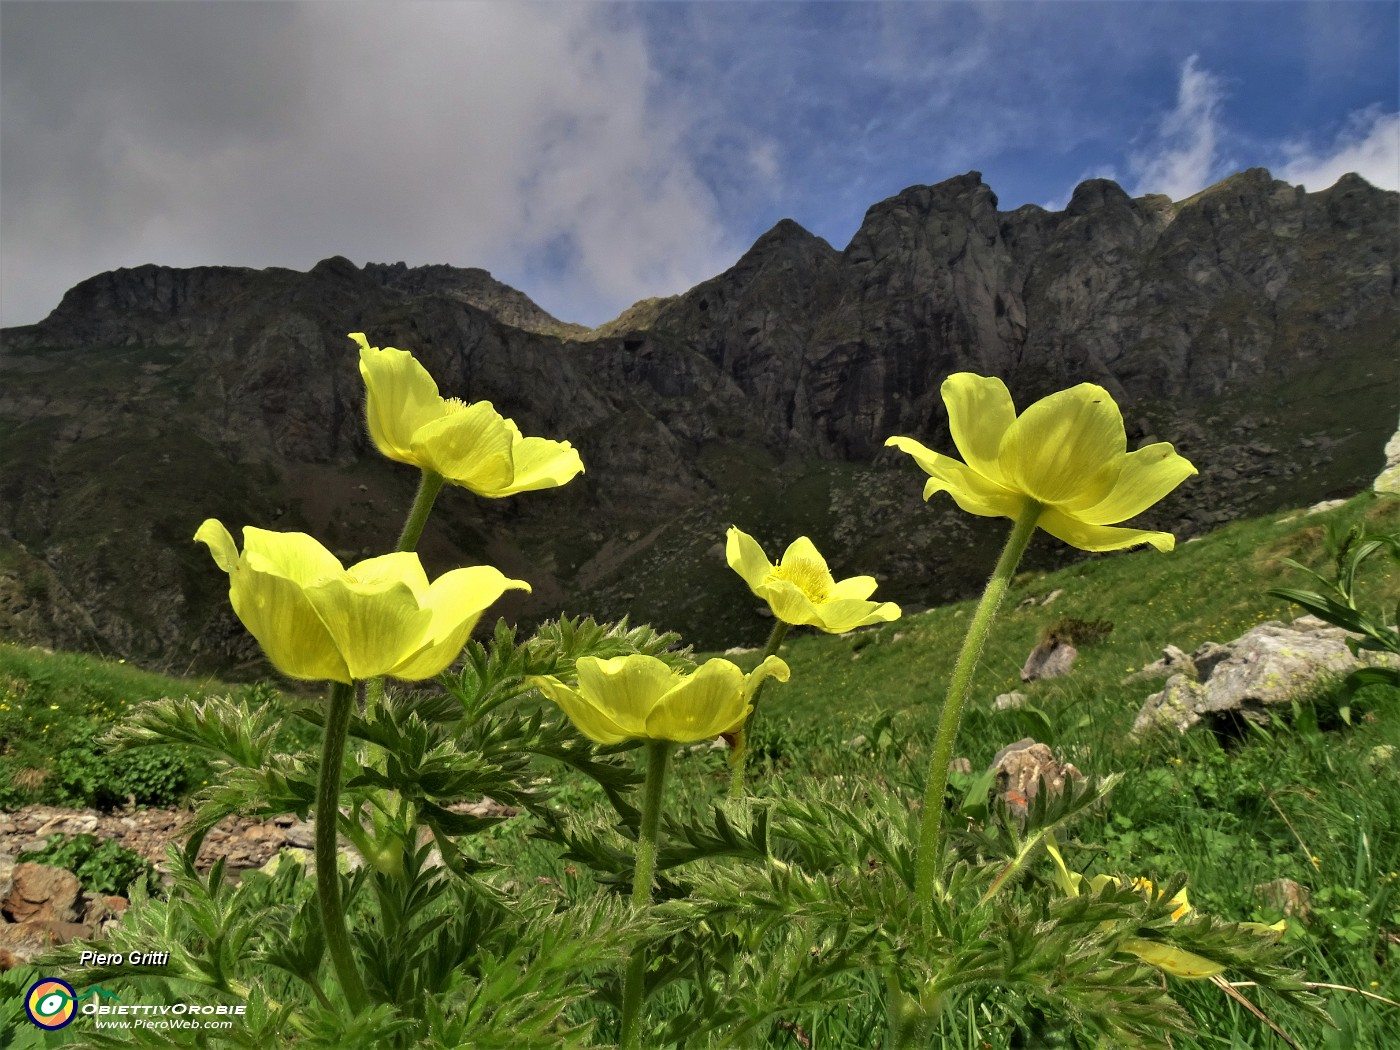 22 Pulsatilla alpina sulphurea (Anemone sulfureo) con vista verso i monti del Benigni.JPG